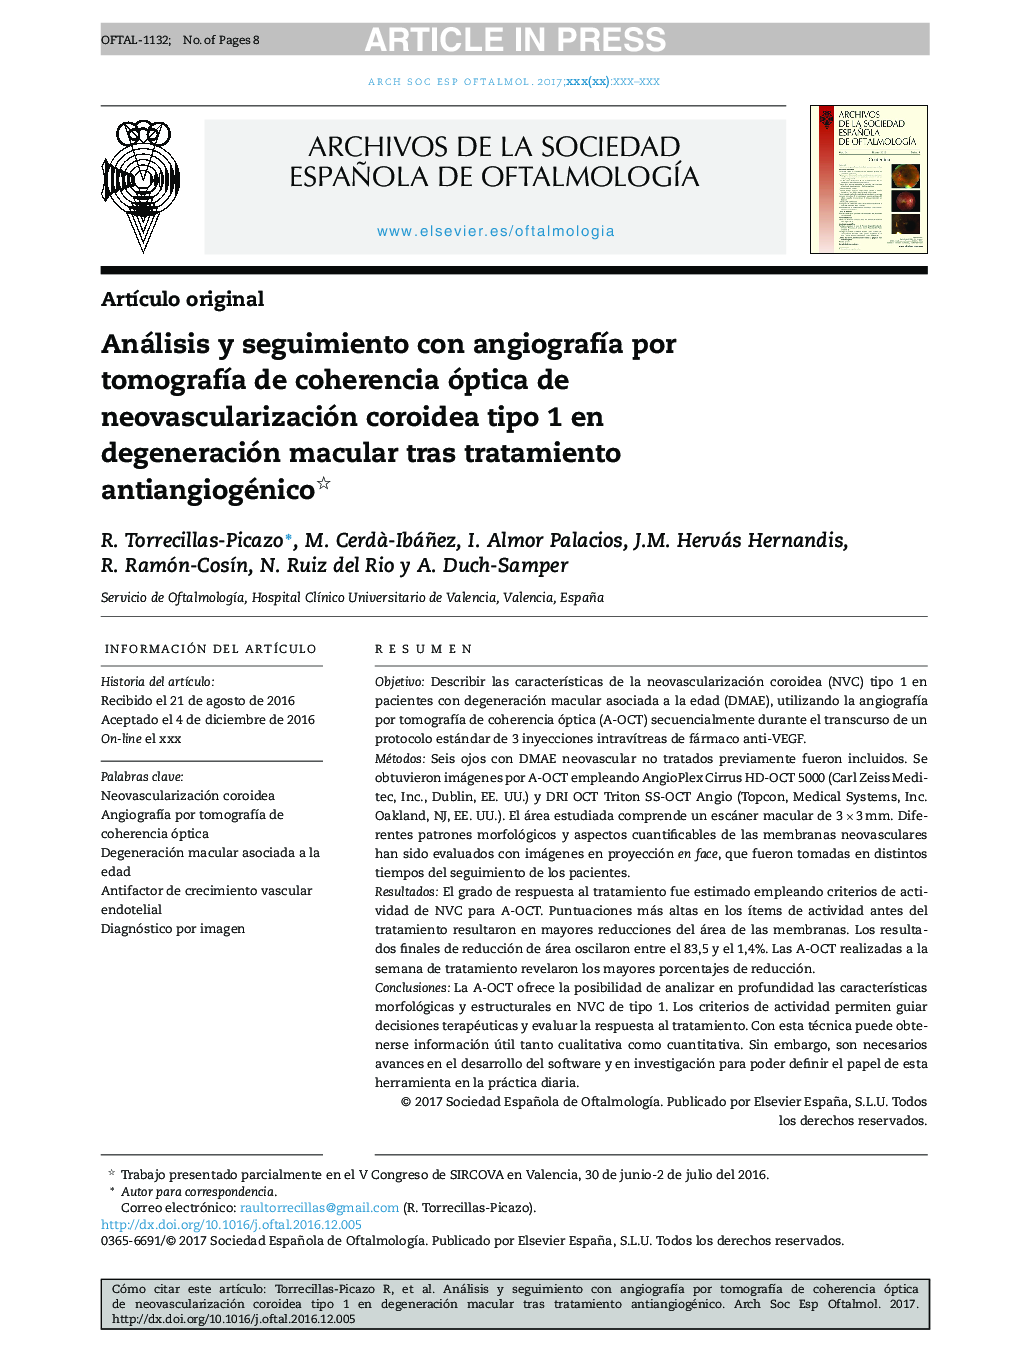 Análisis y seguimiento con angiografÃ­a por tomografÃ­a de coherencia óptica de neovascularización coroidea tipo 1 en degeneración macular tras tratamiento antiangiogénico